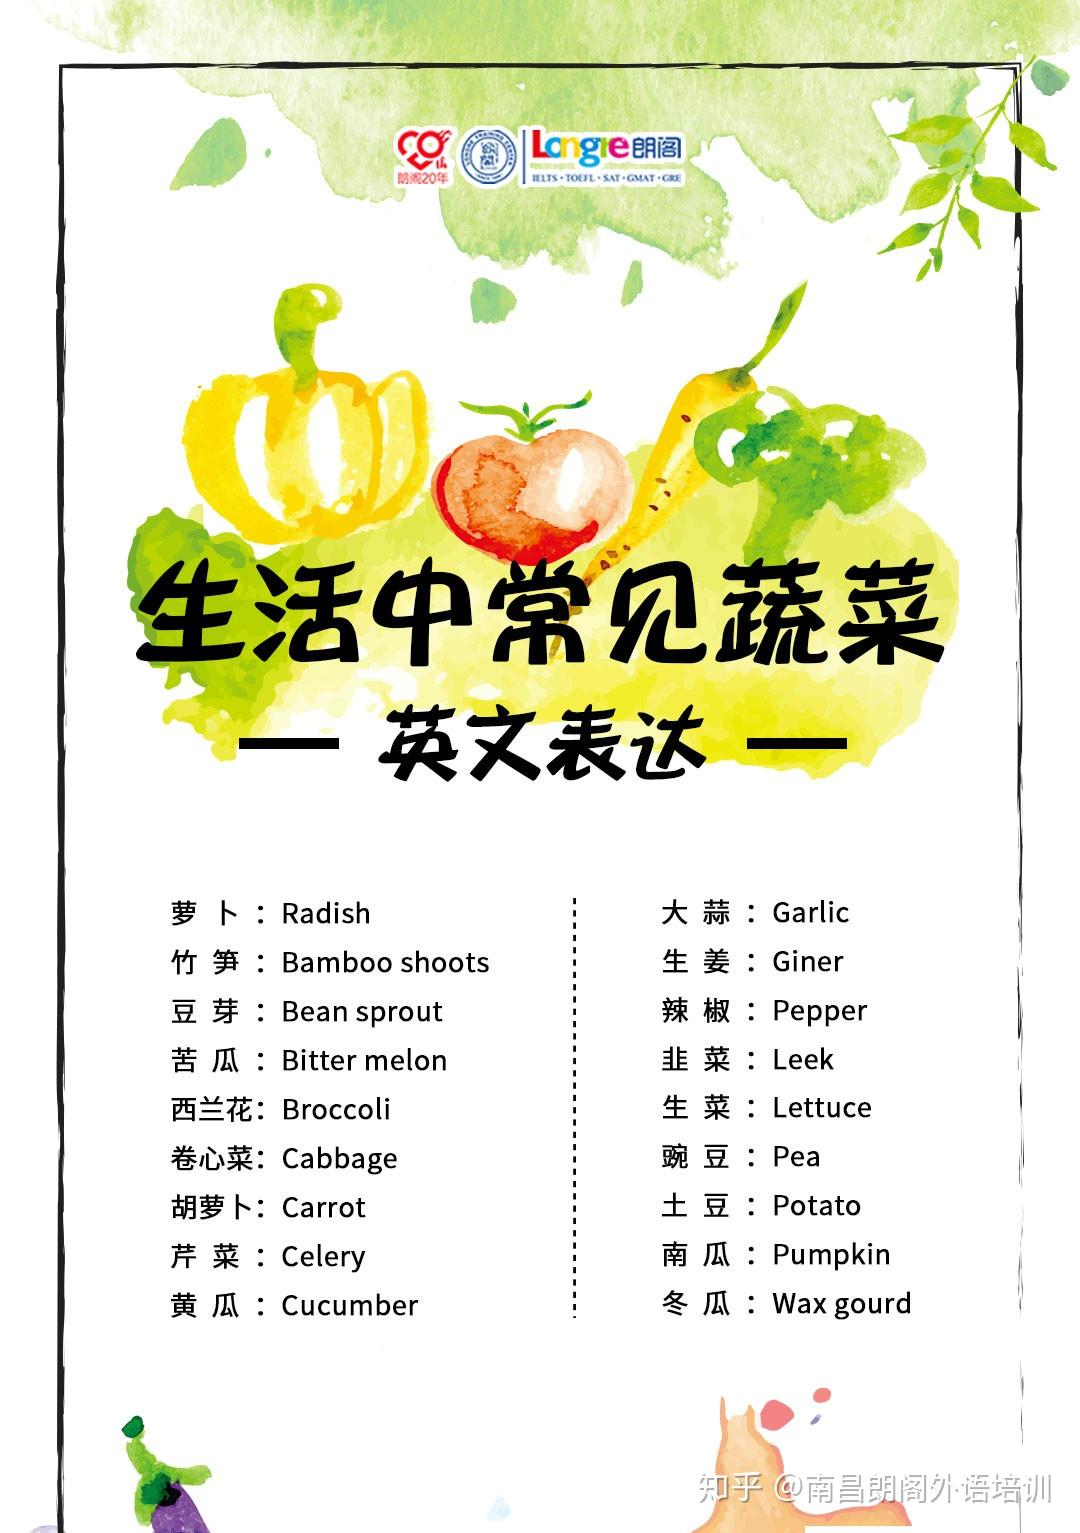 100种蔬菜英语单词图片